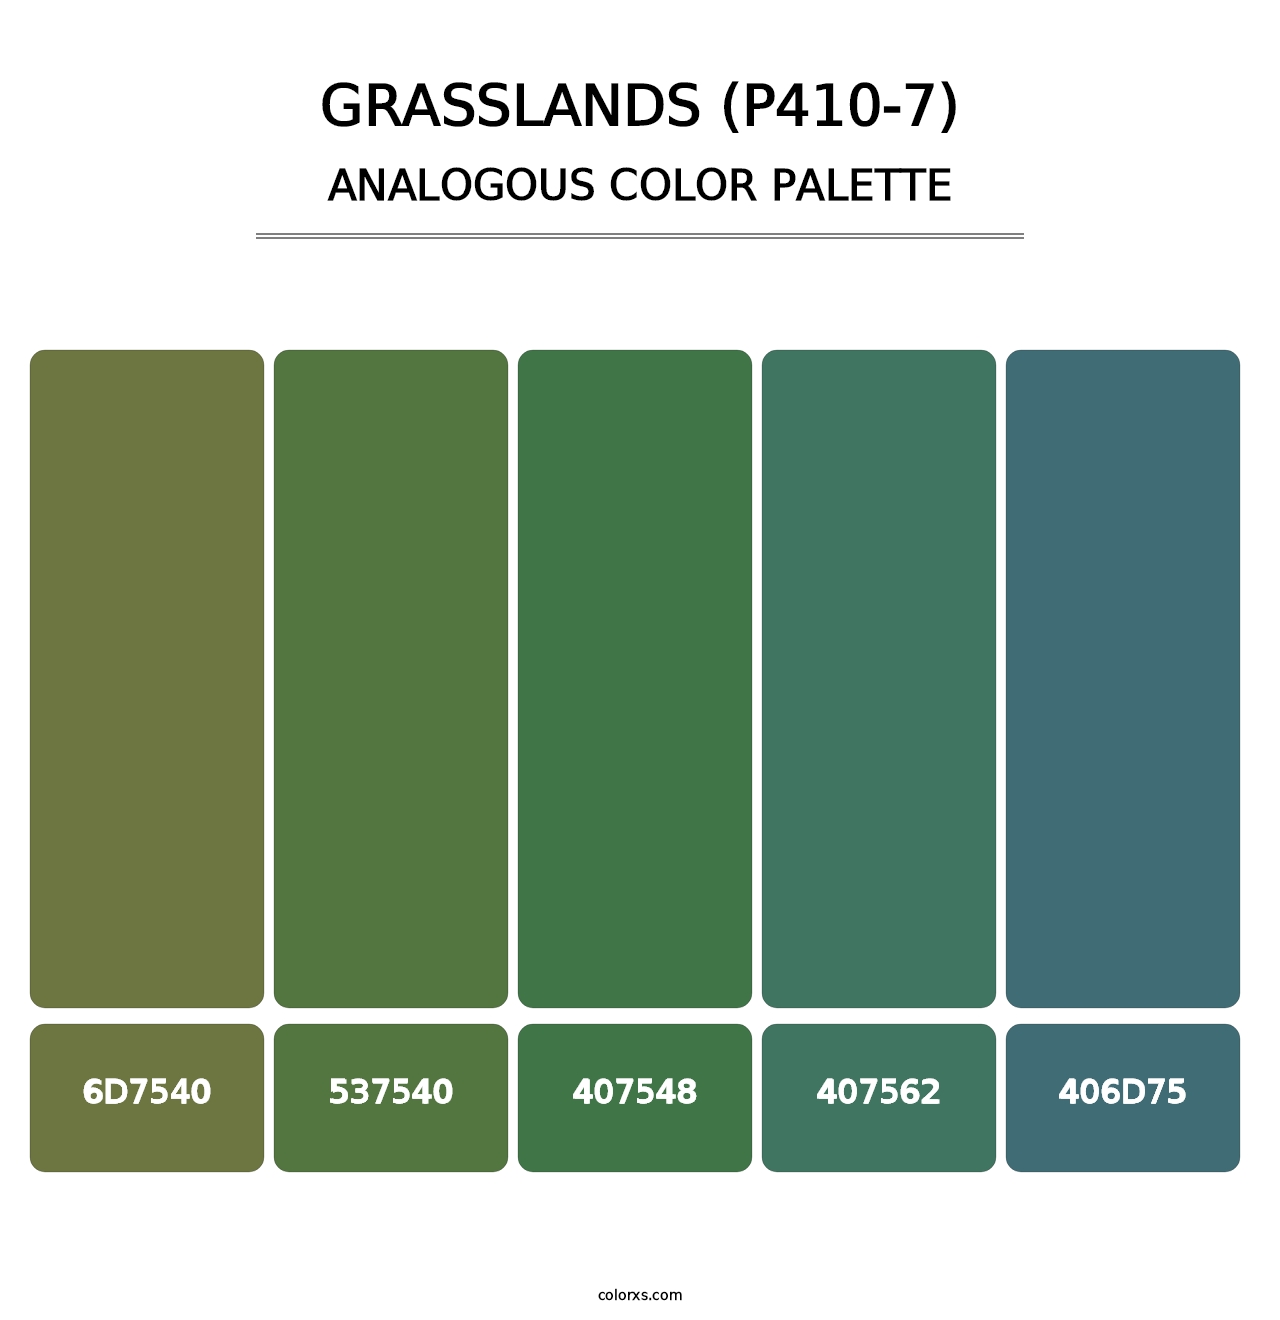 Grasslands (P410-7) - Analogous Color Palette